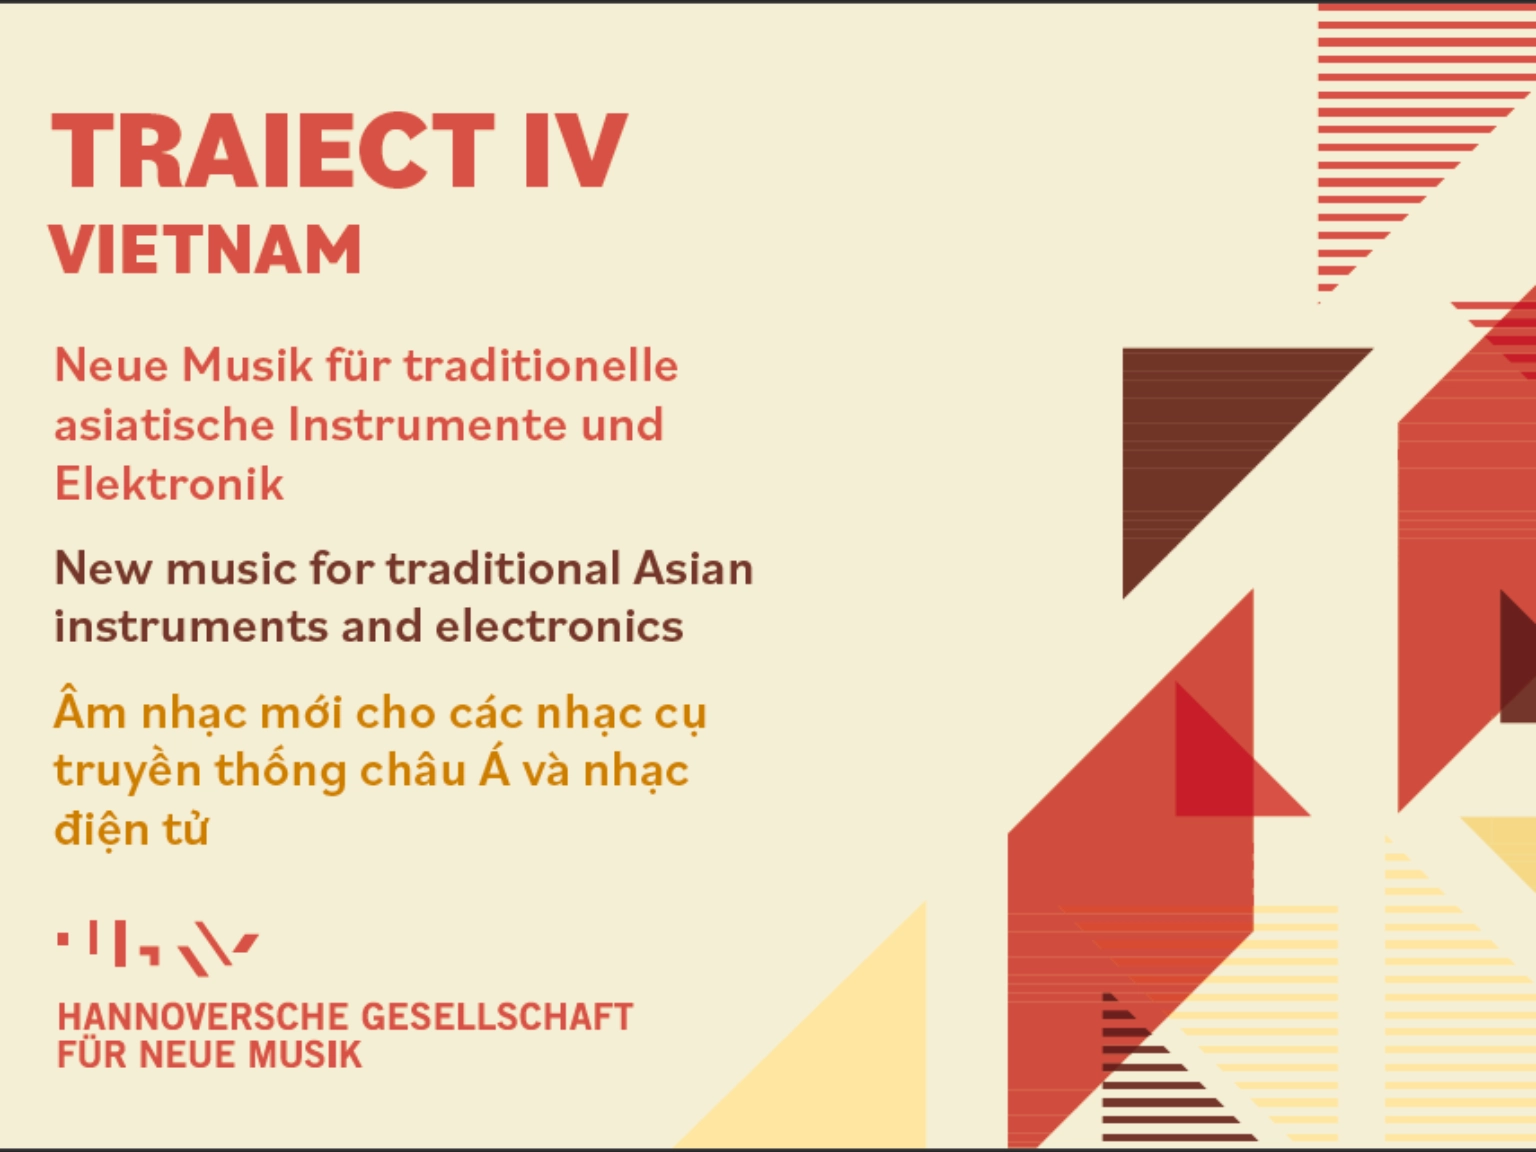 Ausschnitt aus einem Flyer zum Projekt Traiect – Vietnam der hannoversche gesellschaft für neue musik (hgnm).